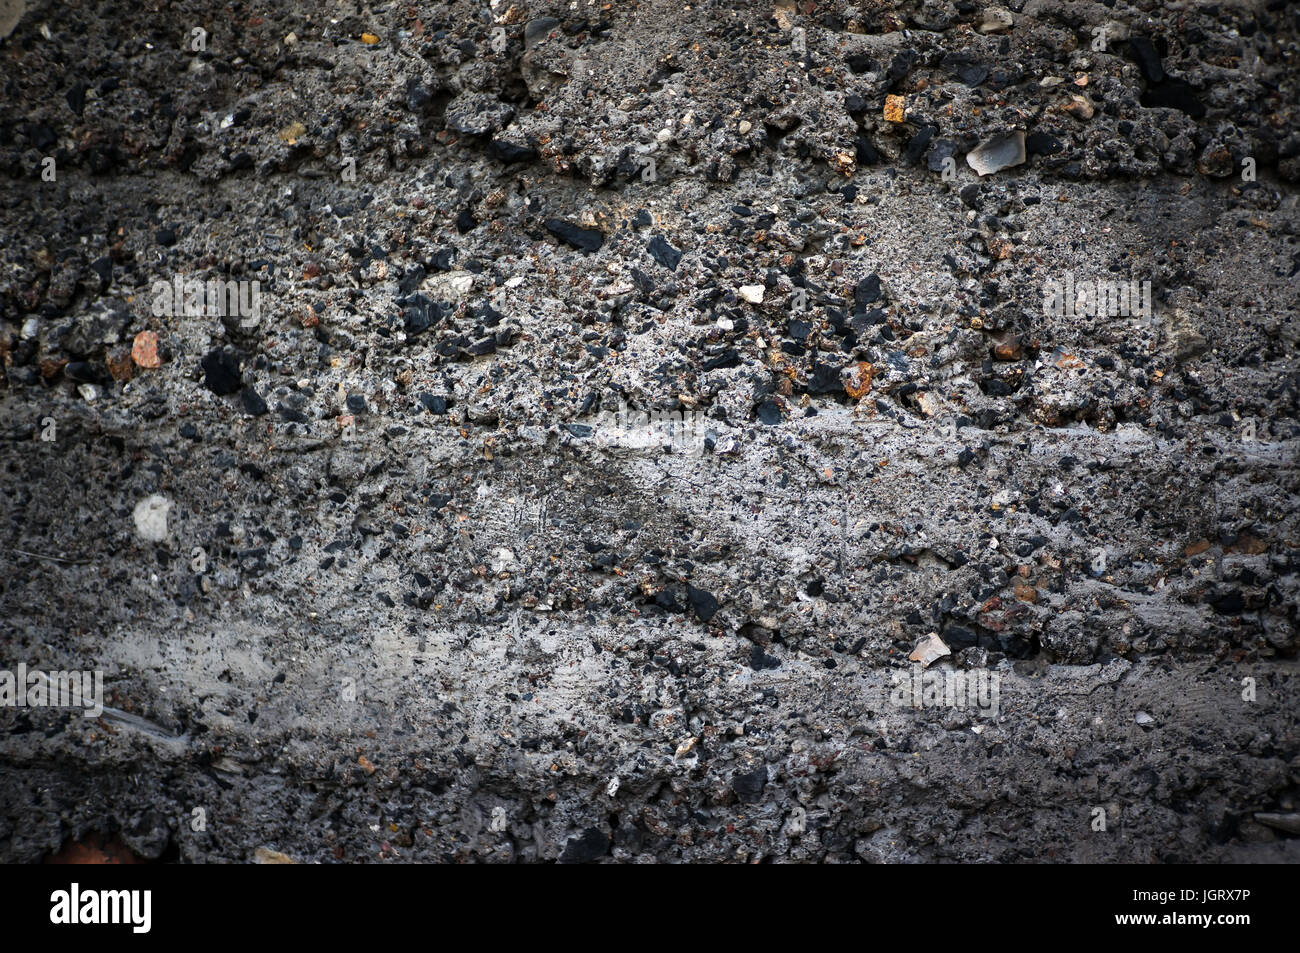 La texture sombre de cinder block avec les pierres brutes. Béton Granulats texture background. Mur en béton dans le style grunge Banque D'Images